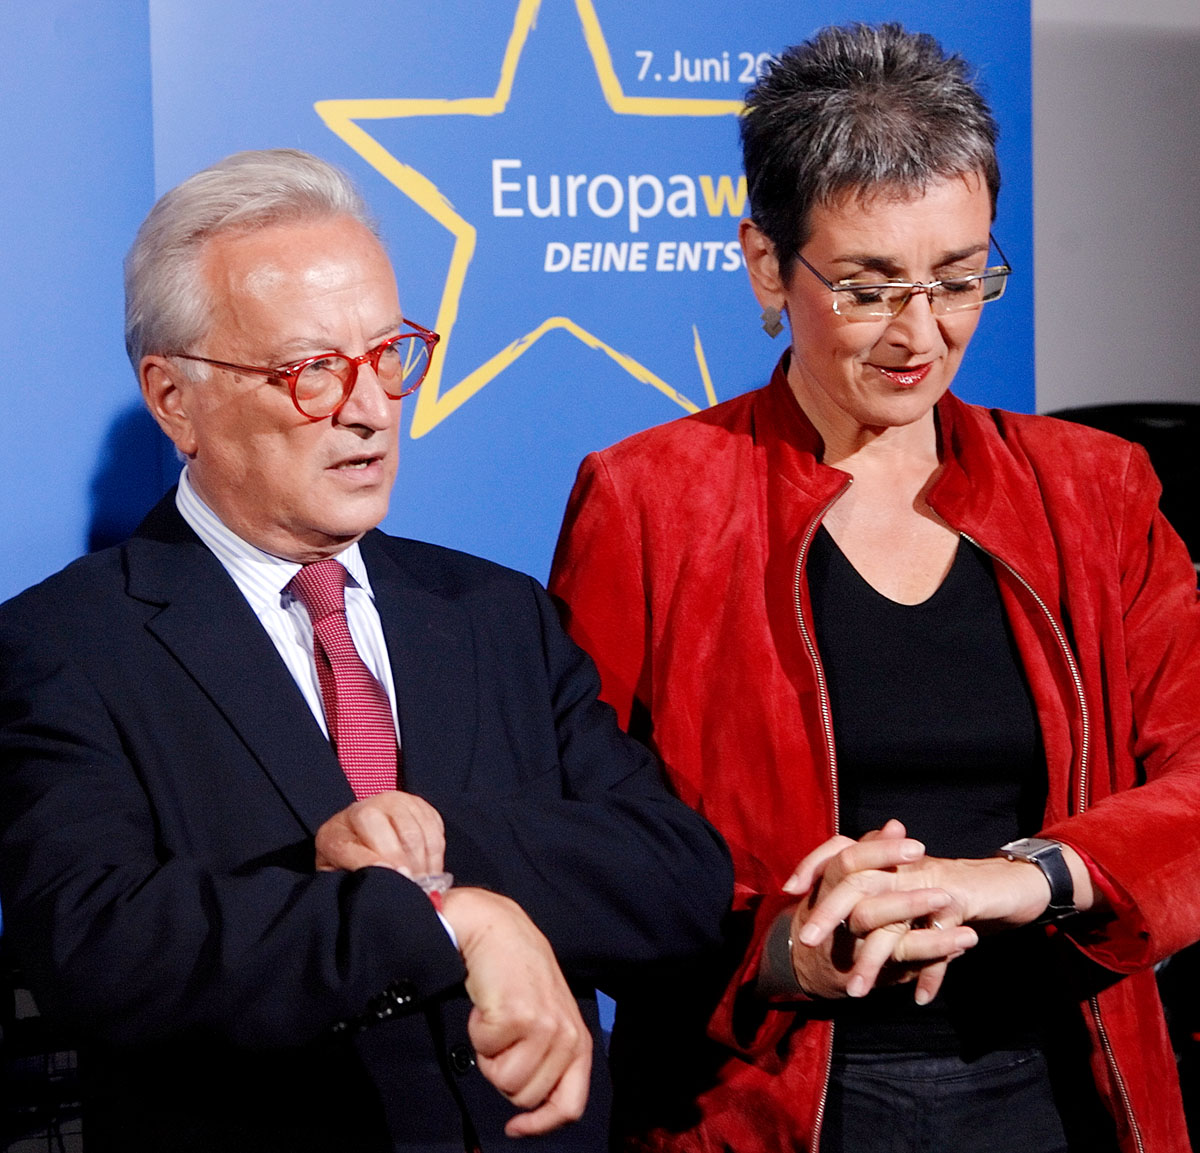 A magyar ügy két elkötelezett baloldali politikusa a szavazásra készül: Hannes Swoboda, az európai szociáldemokraták vezetője és Ulrike Lunacek, a zöldek strasbourgi képviselője